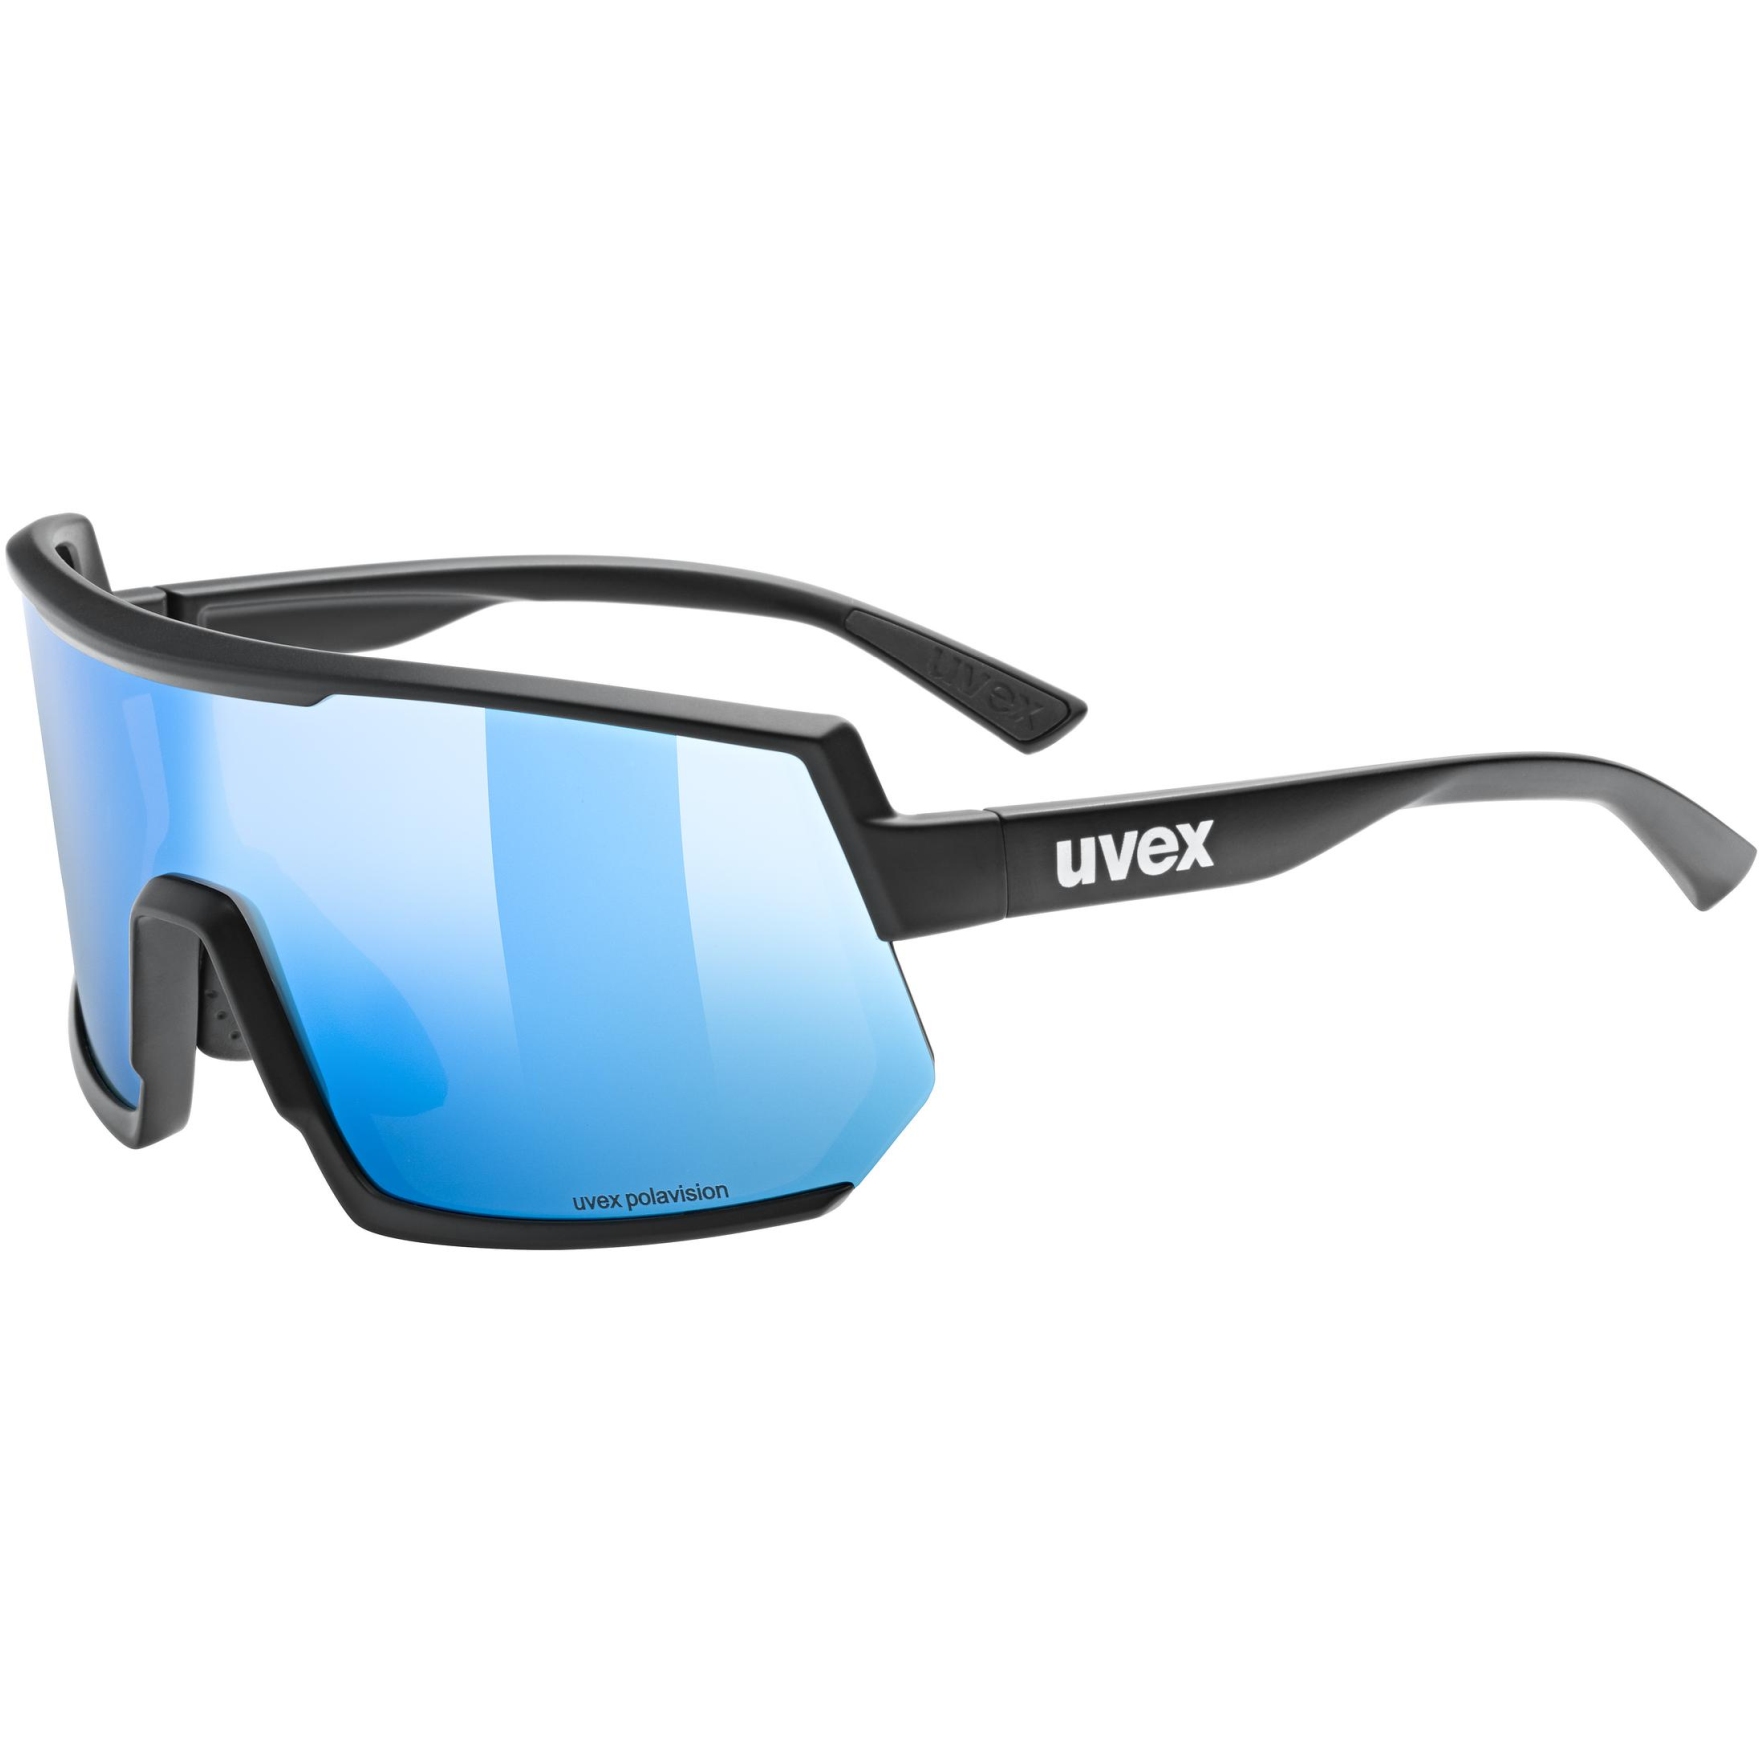 Produktbild von Uvex sportstyle 235 P Brille - black matt/polavision supravision mirror blue